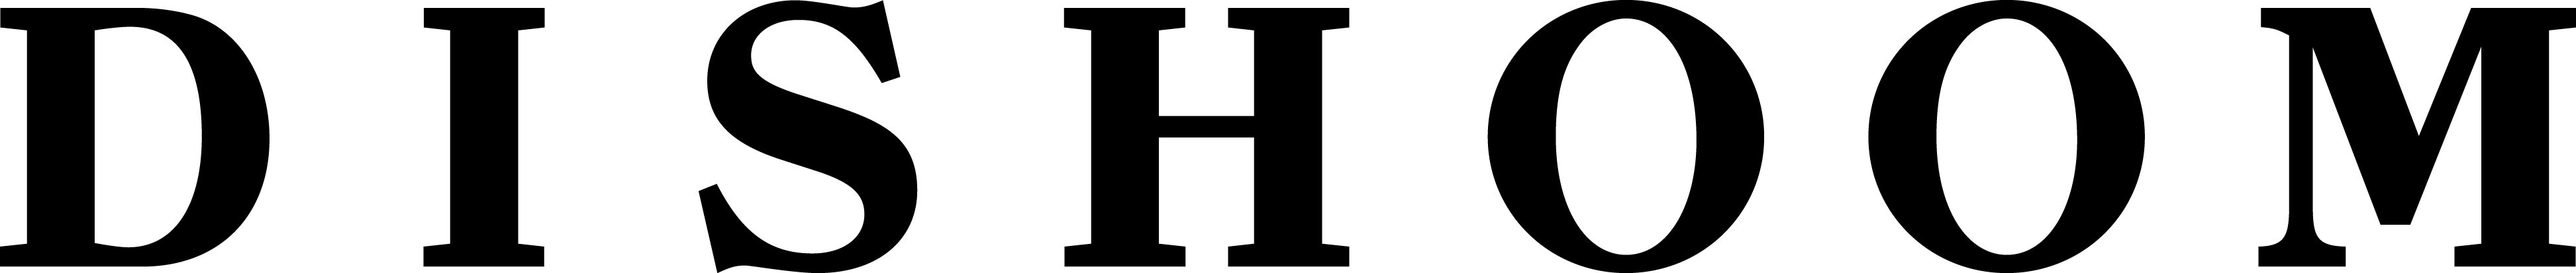 DIS_Shoreditch logo